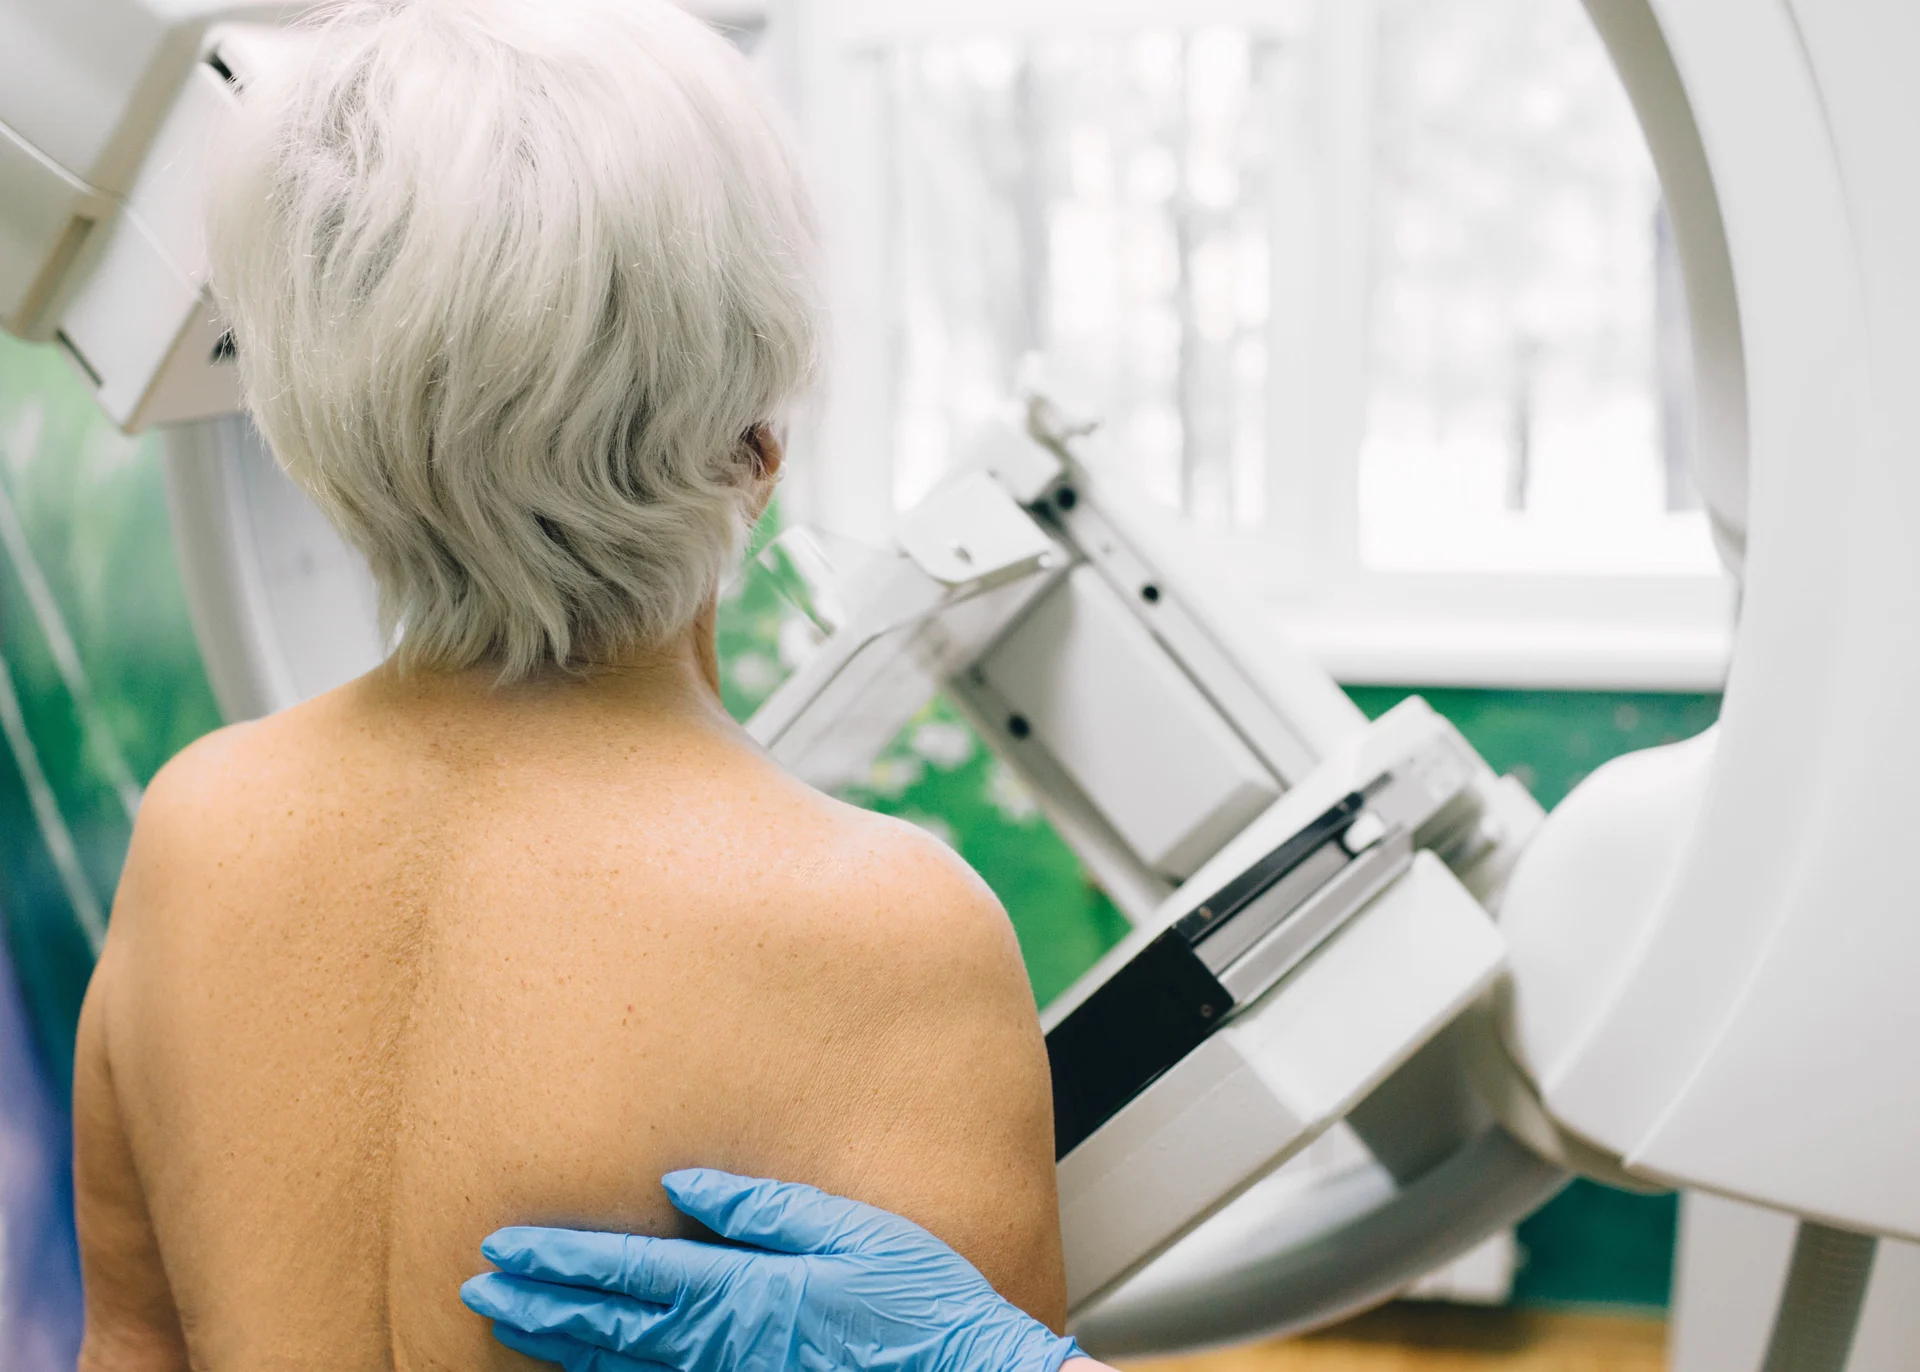 Image d'actualité : Une façon d'augmenter les taux de mammographies : Permettre aux femmes de prendre leurs propres rendez-vous